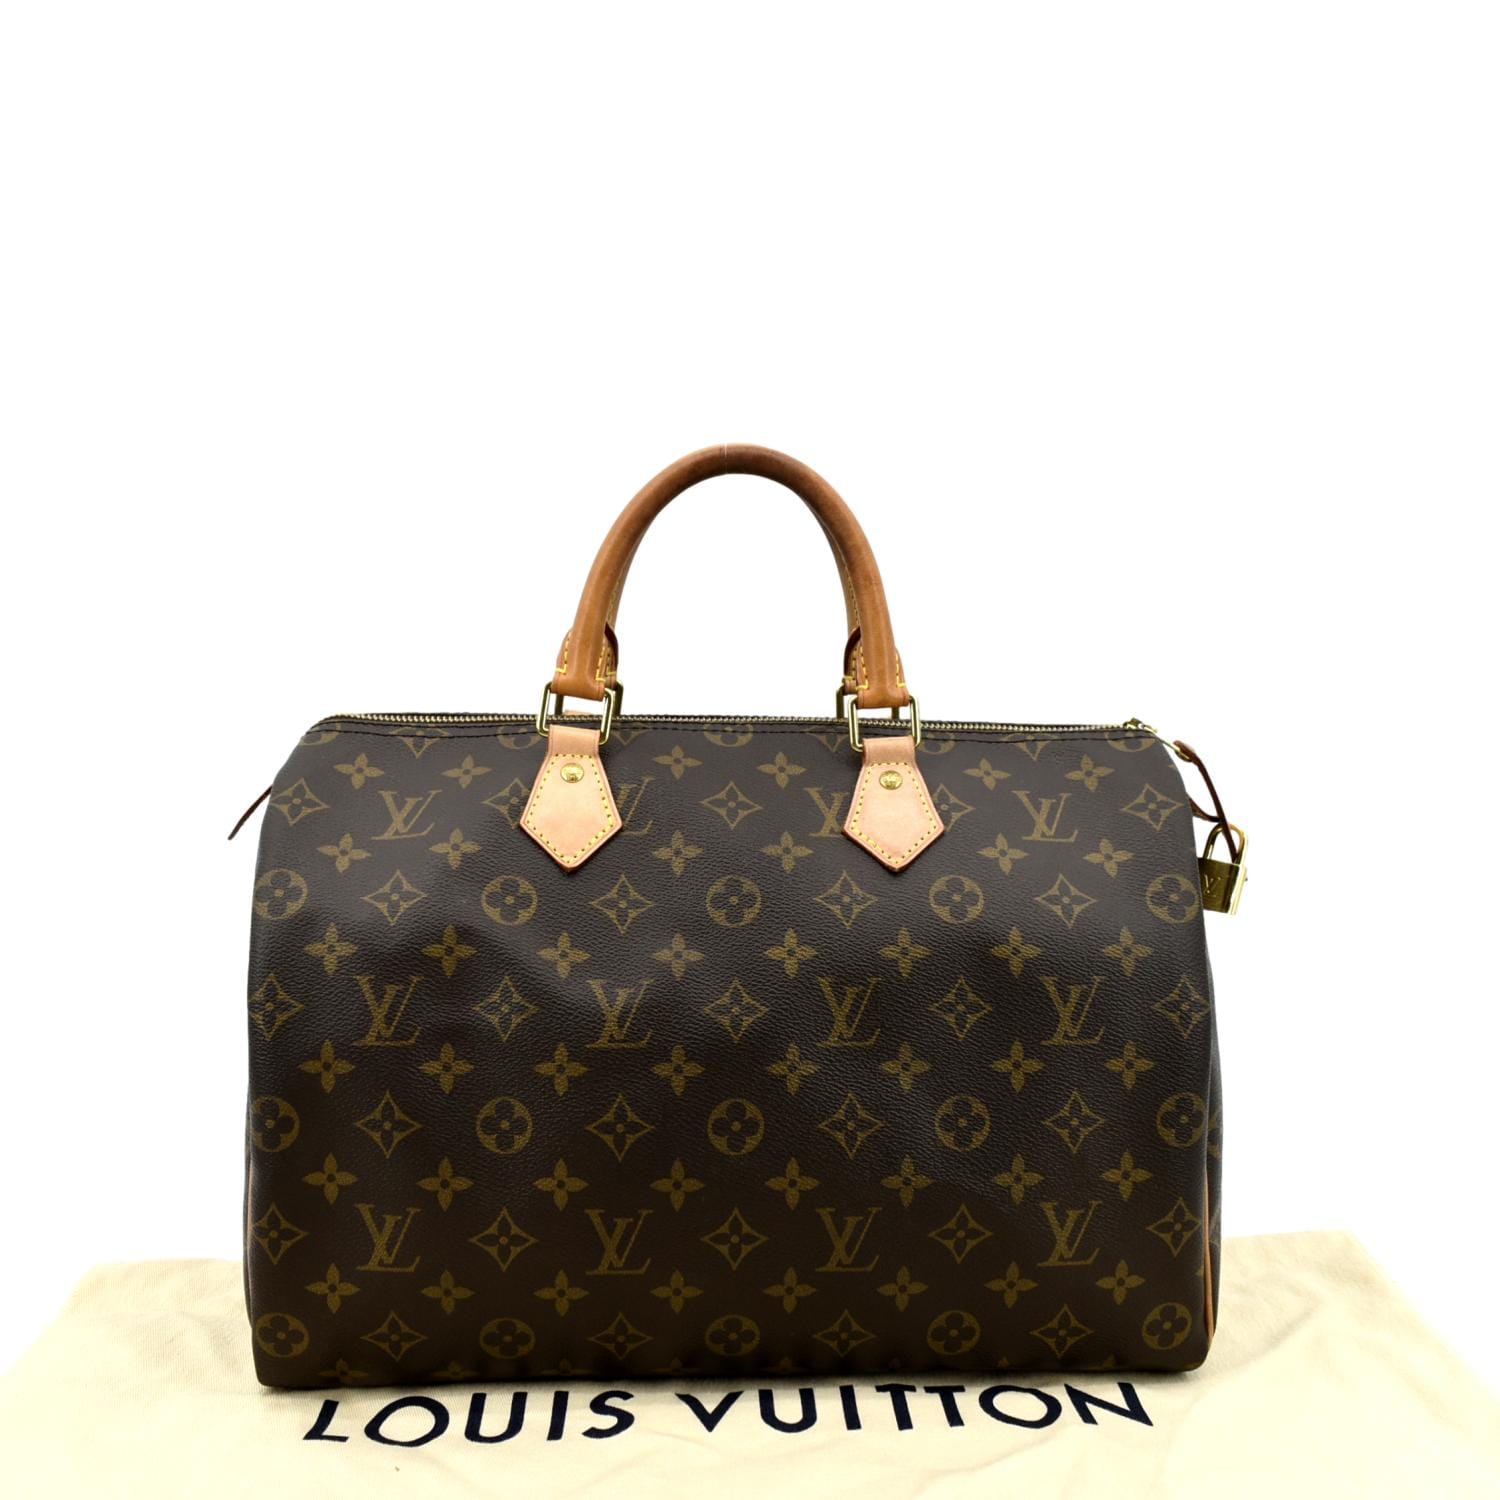 Louis Vuitton Speedy 35 second hand prices